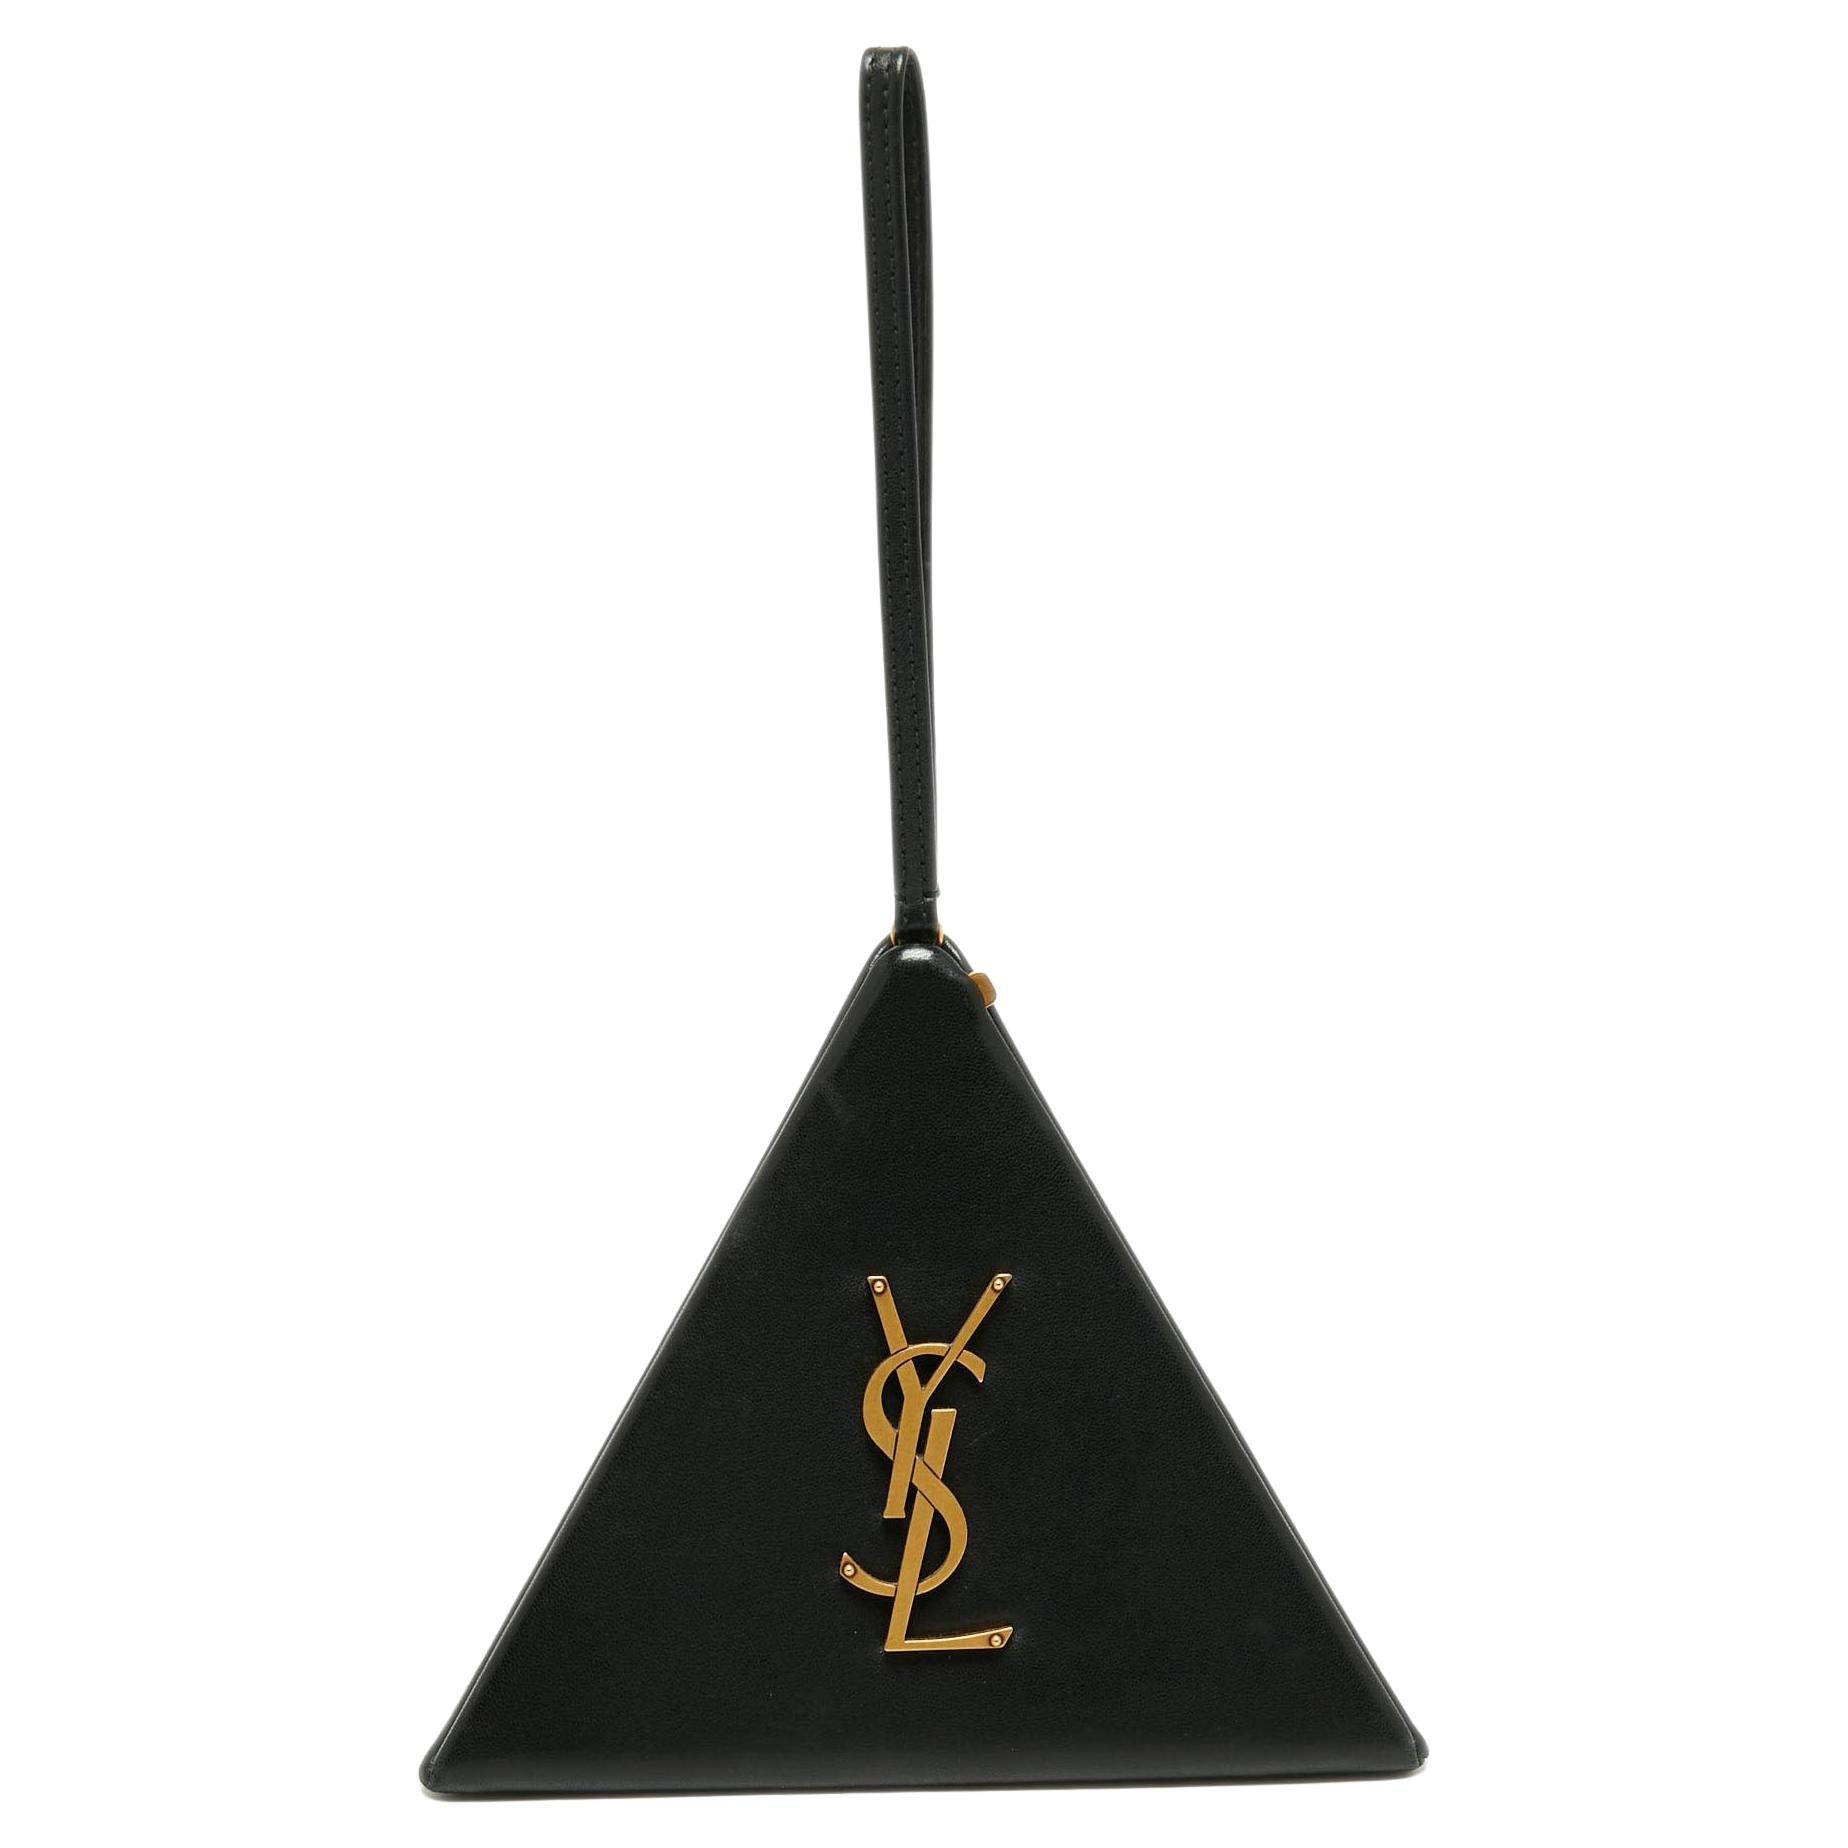 Saint Laurent Black Leather Pyramid Box Wristlet Clutch